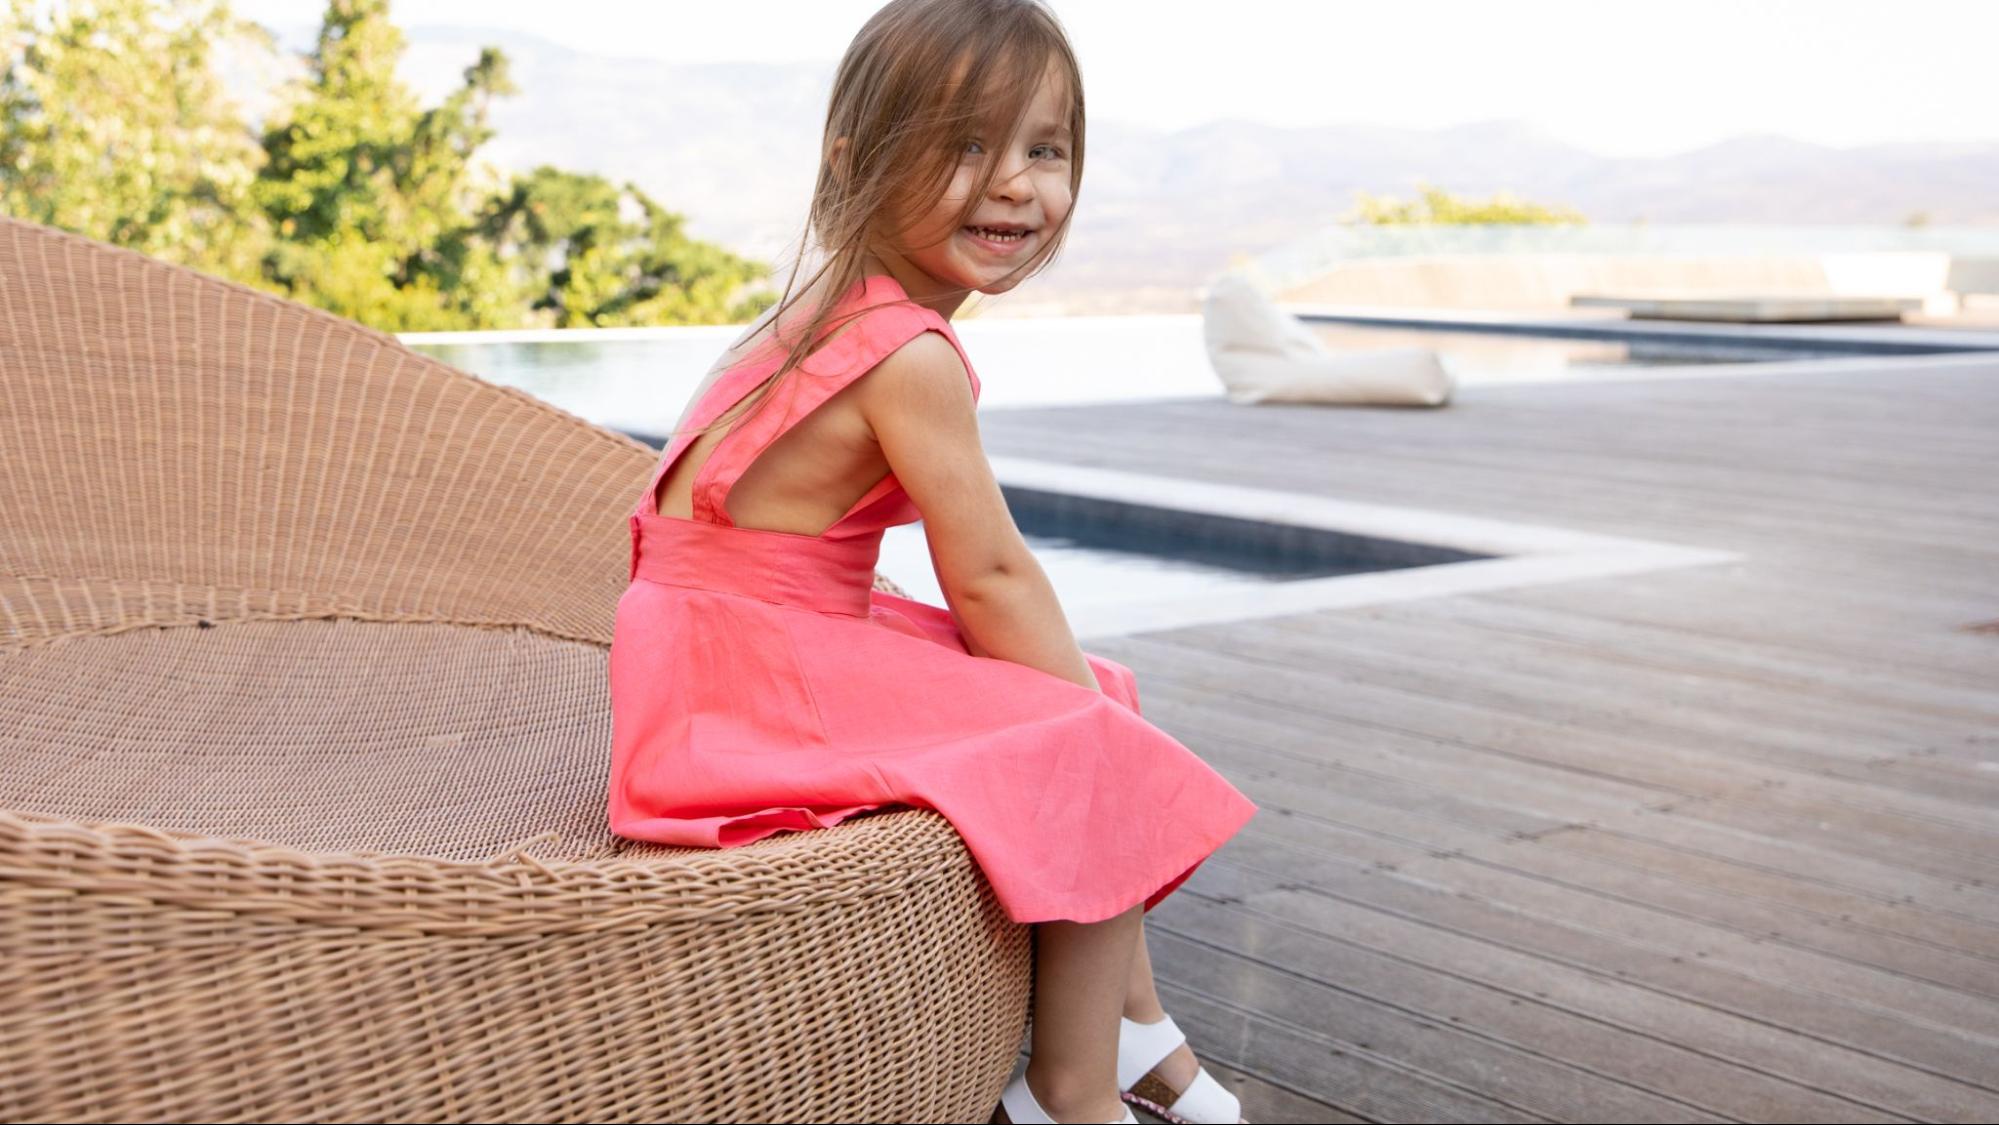 Το πιο cute και στιλάτο ελληνικό brand με παιδικά ρούχα που μοιάζει με κουκλόσπιτο ήρθε και στη Γλυφάδα